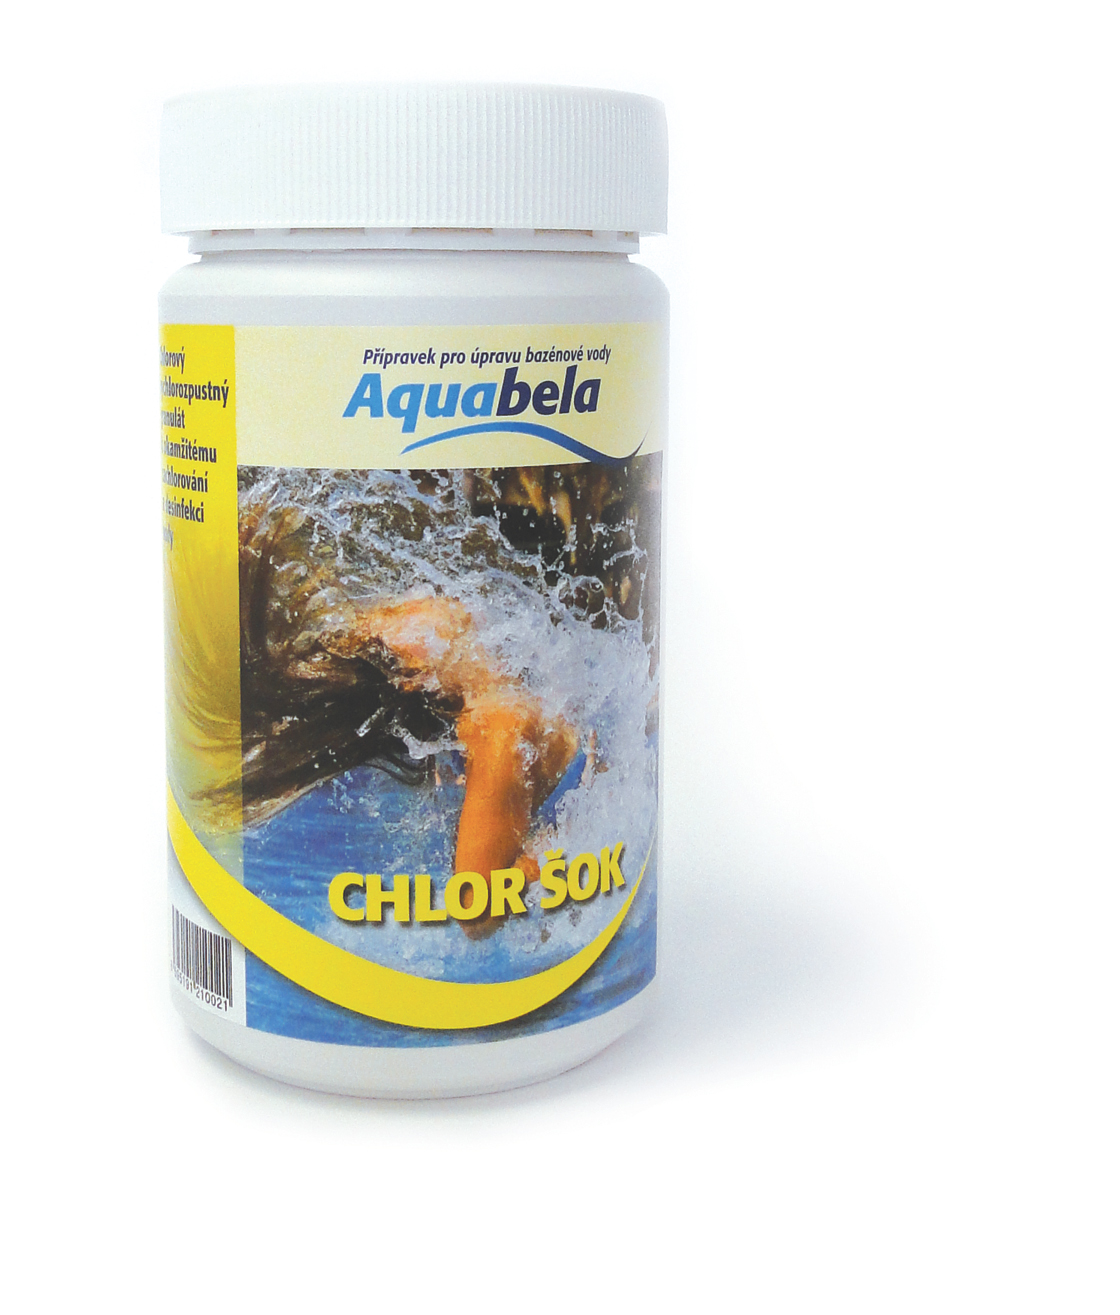 Aquabela Chlor ŠOK - dóza 1 kg